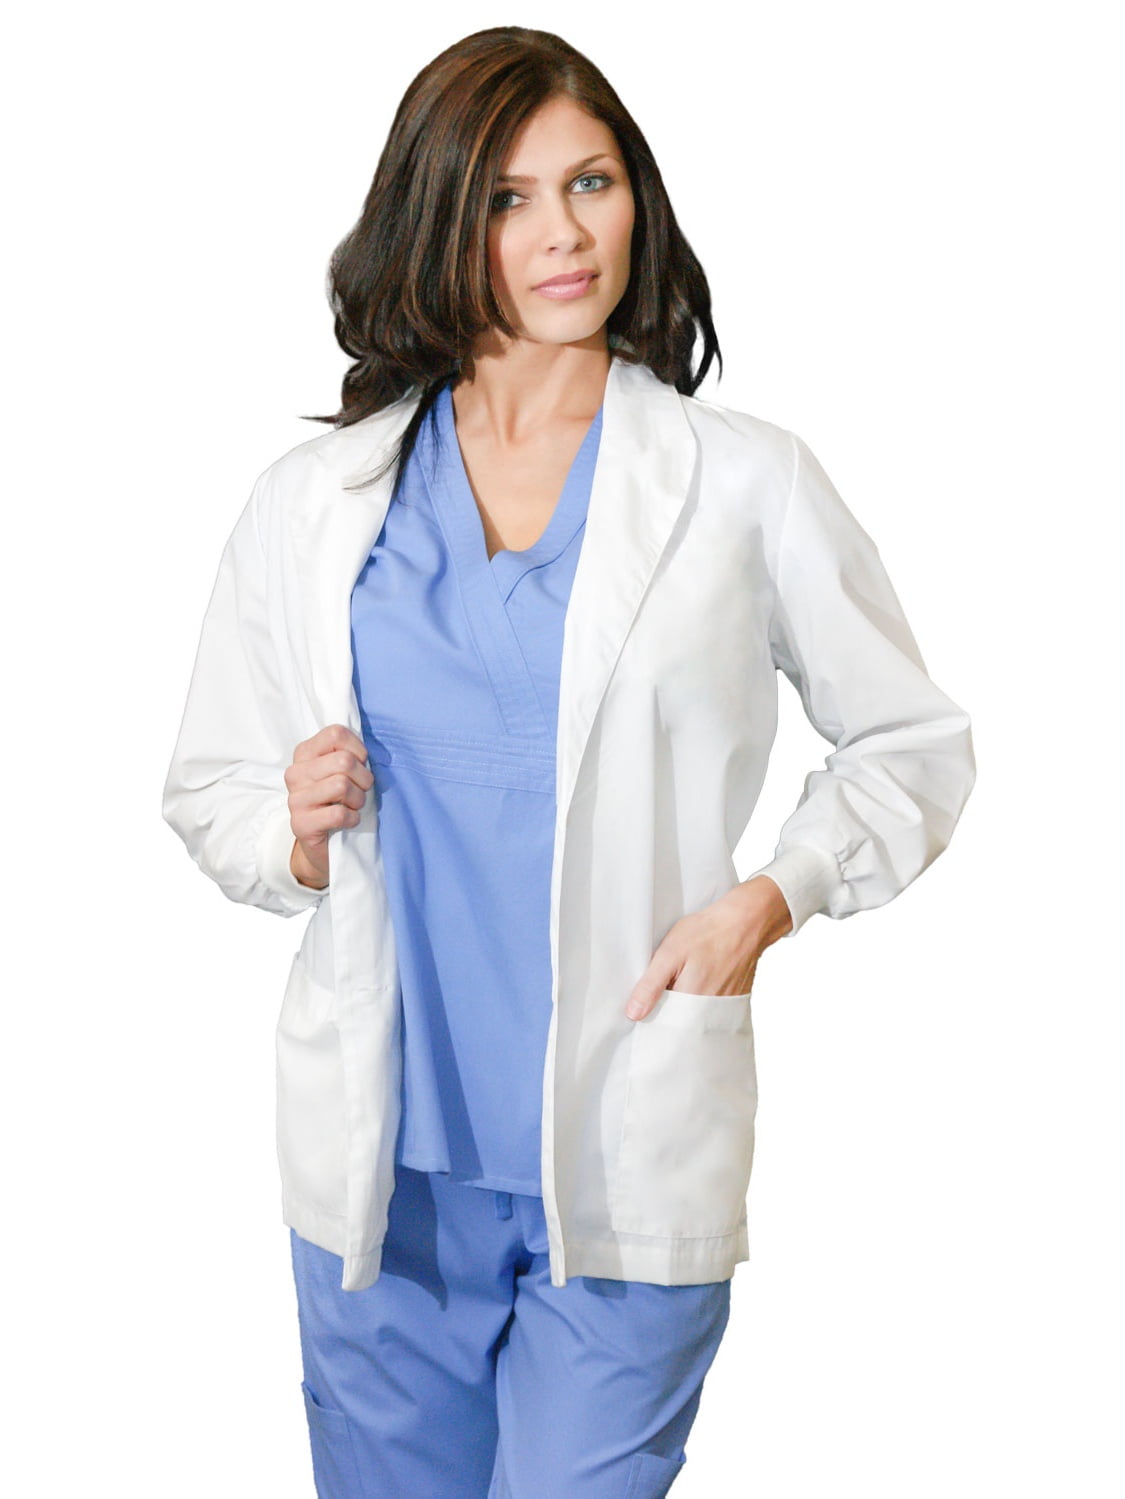 Womens Multicolored Cheap Lab Coat Nurse Uniform Doctor Jacket S/M/L/XL/2XL 